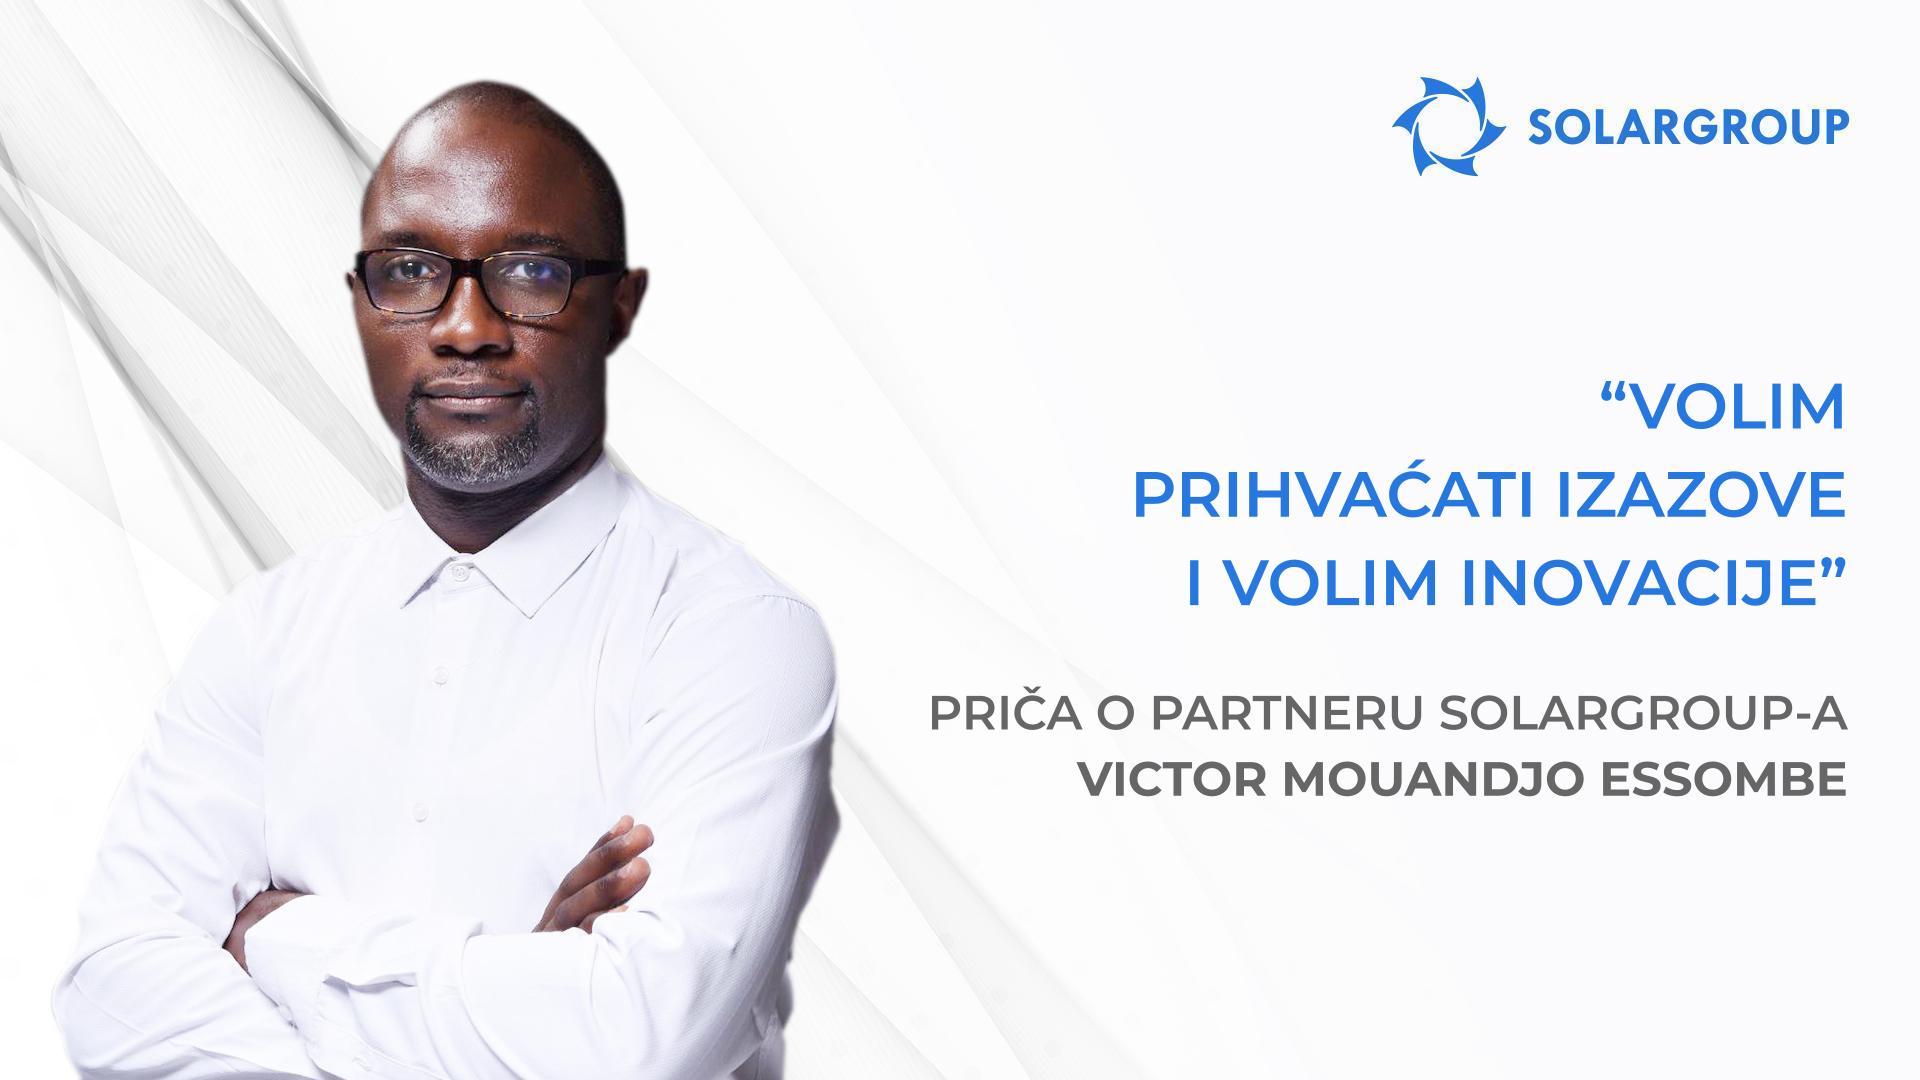 Moj tim i ja imamo velike planove! | Priča partnera SOLARGROUP - Victor Mouandjo Essombe